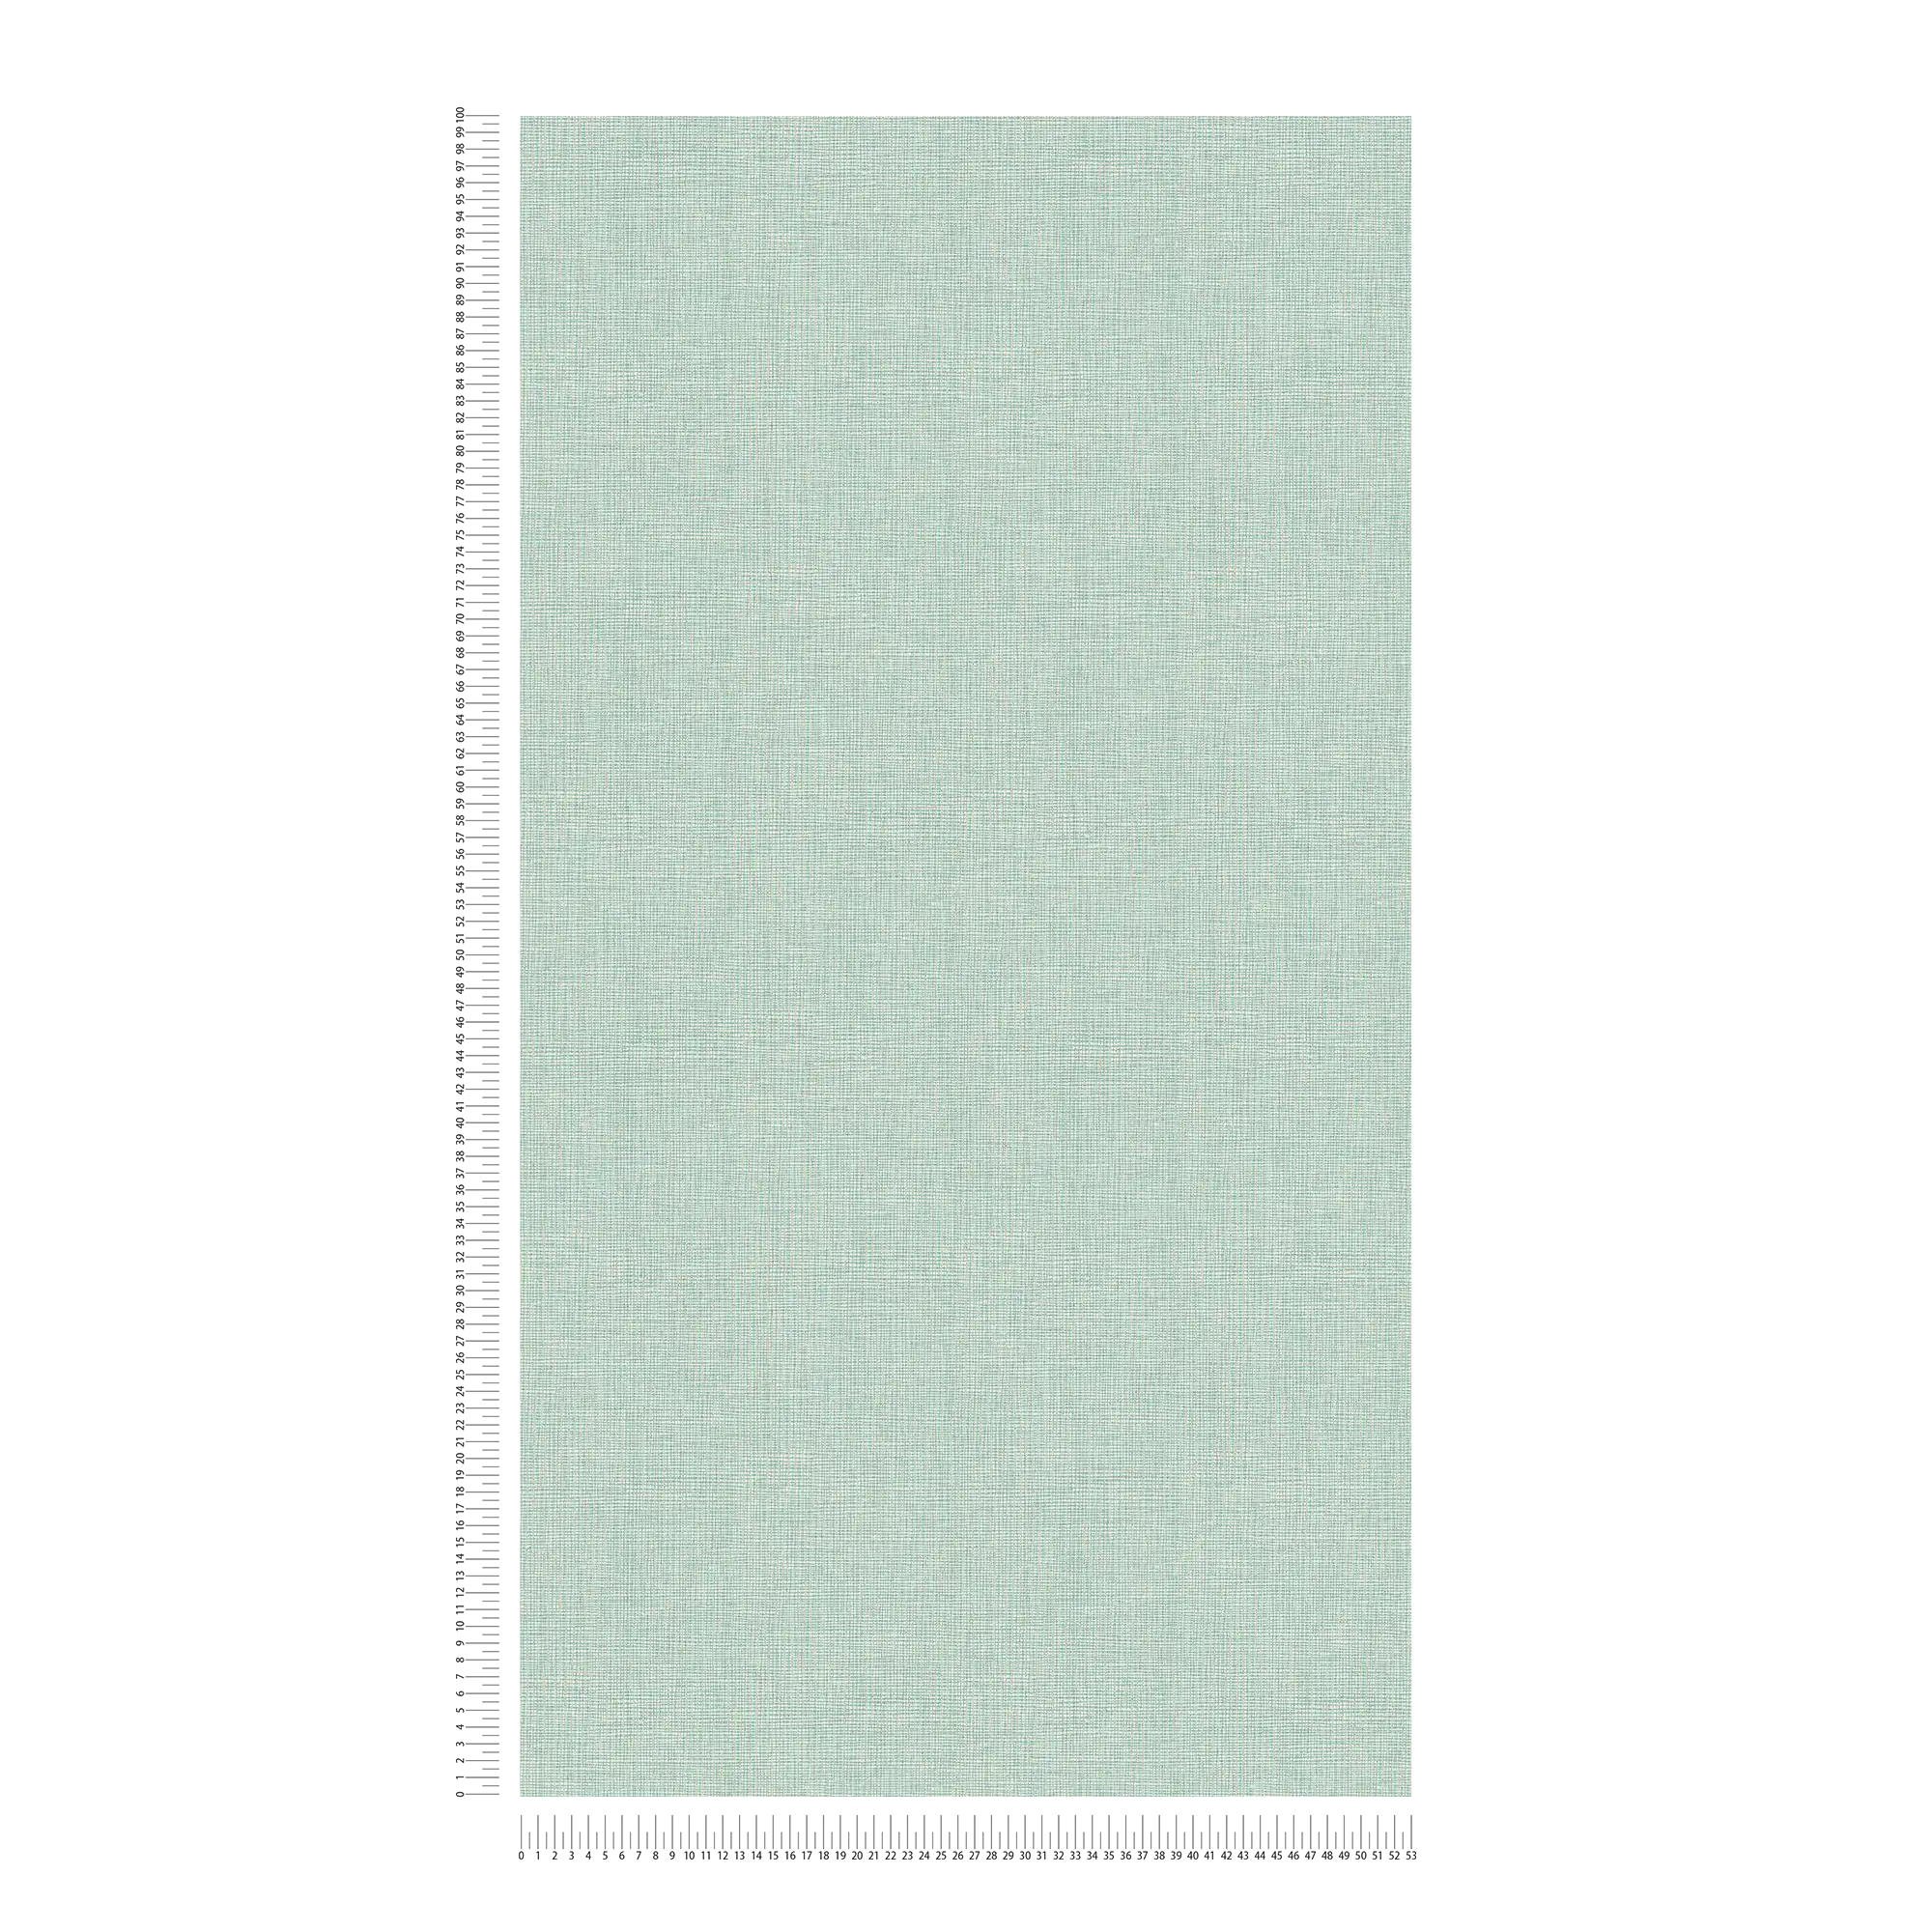             Papel pintado textil verde claro con detalles dorados - azul, gris, plata
        